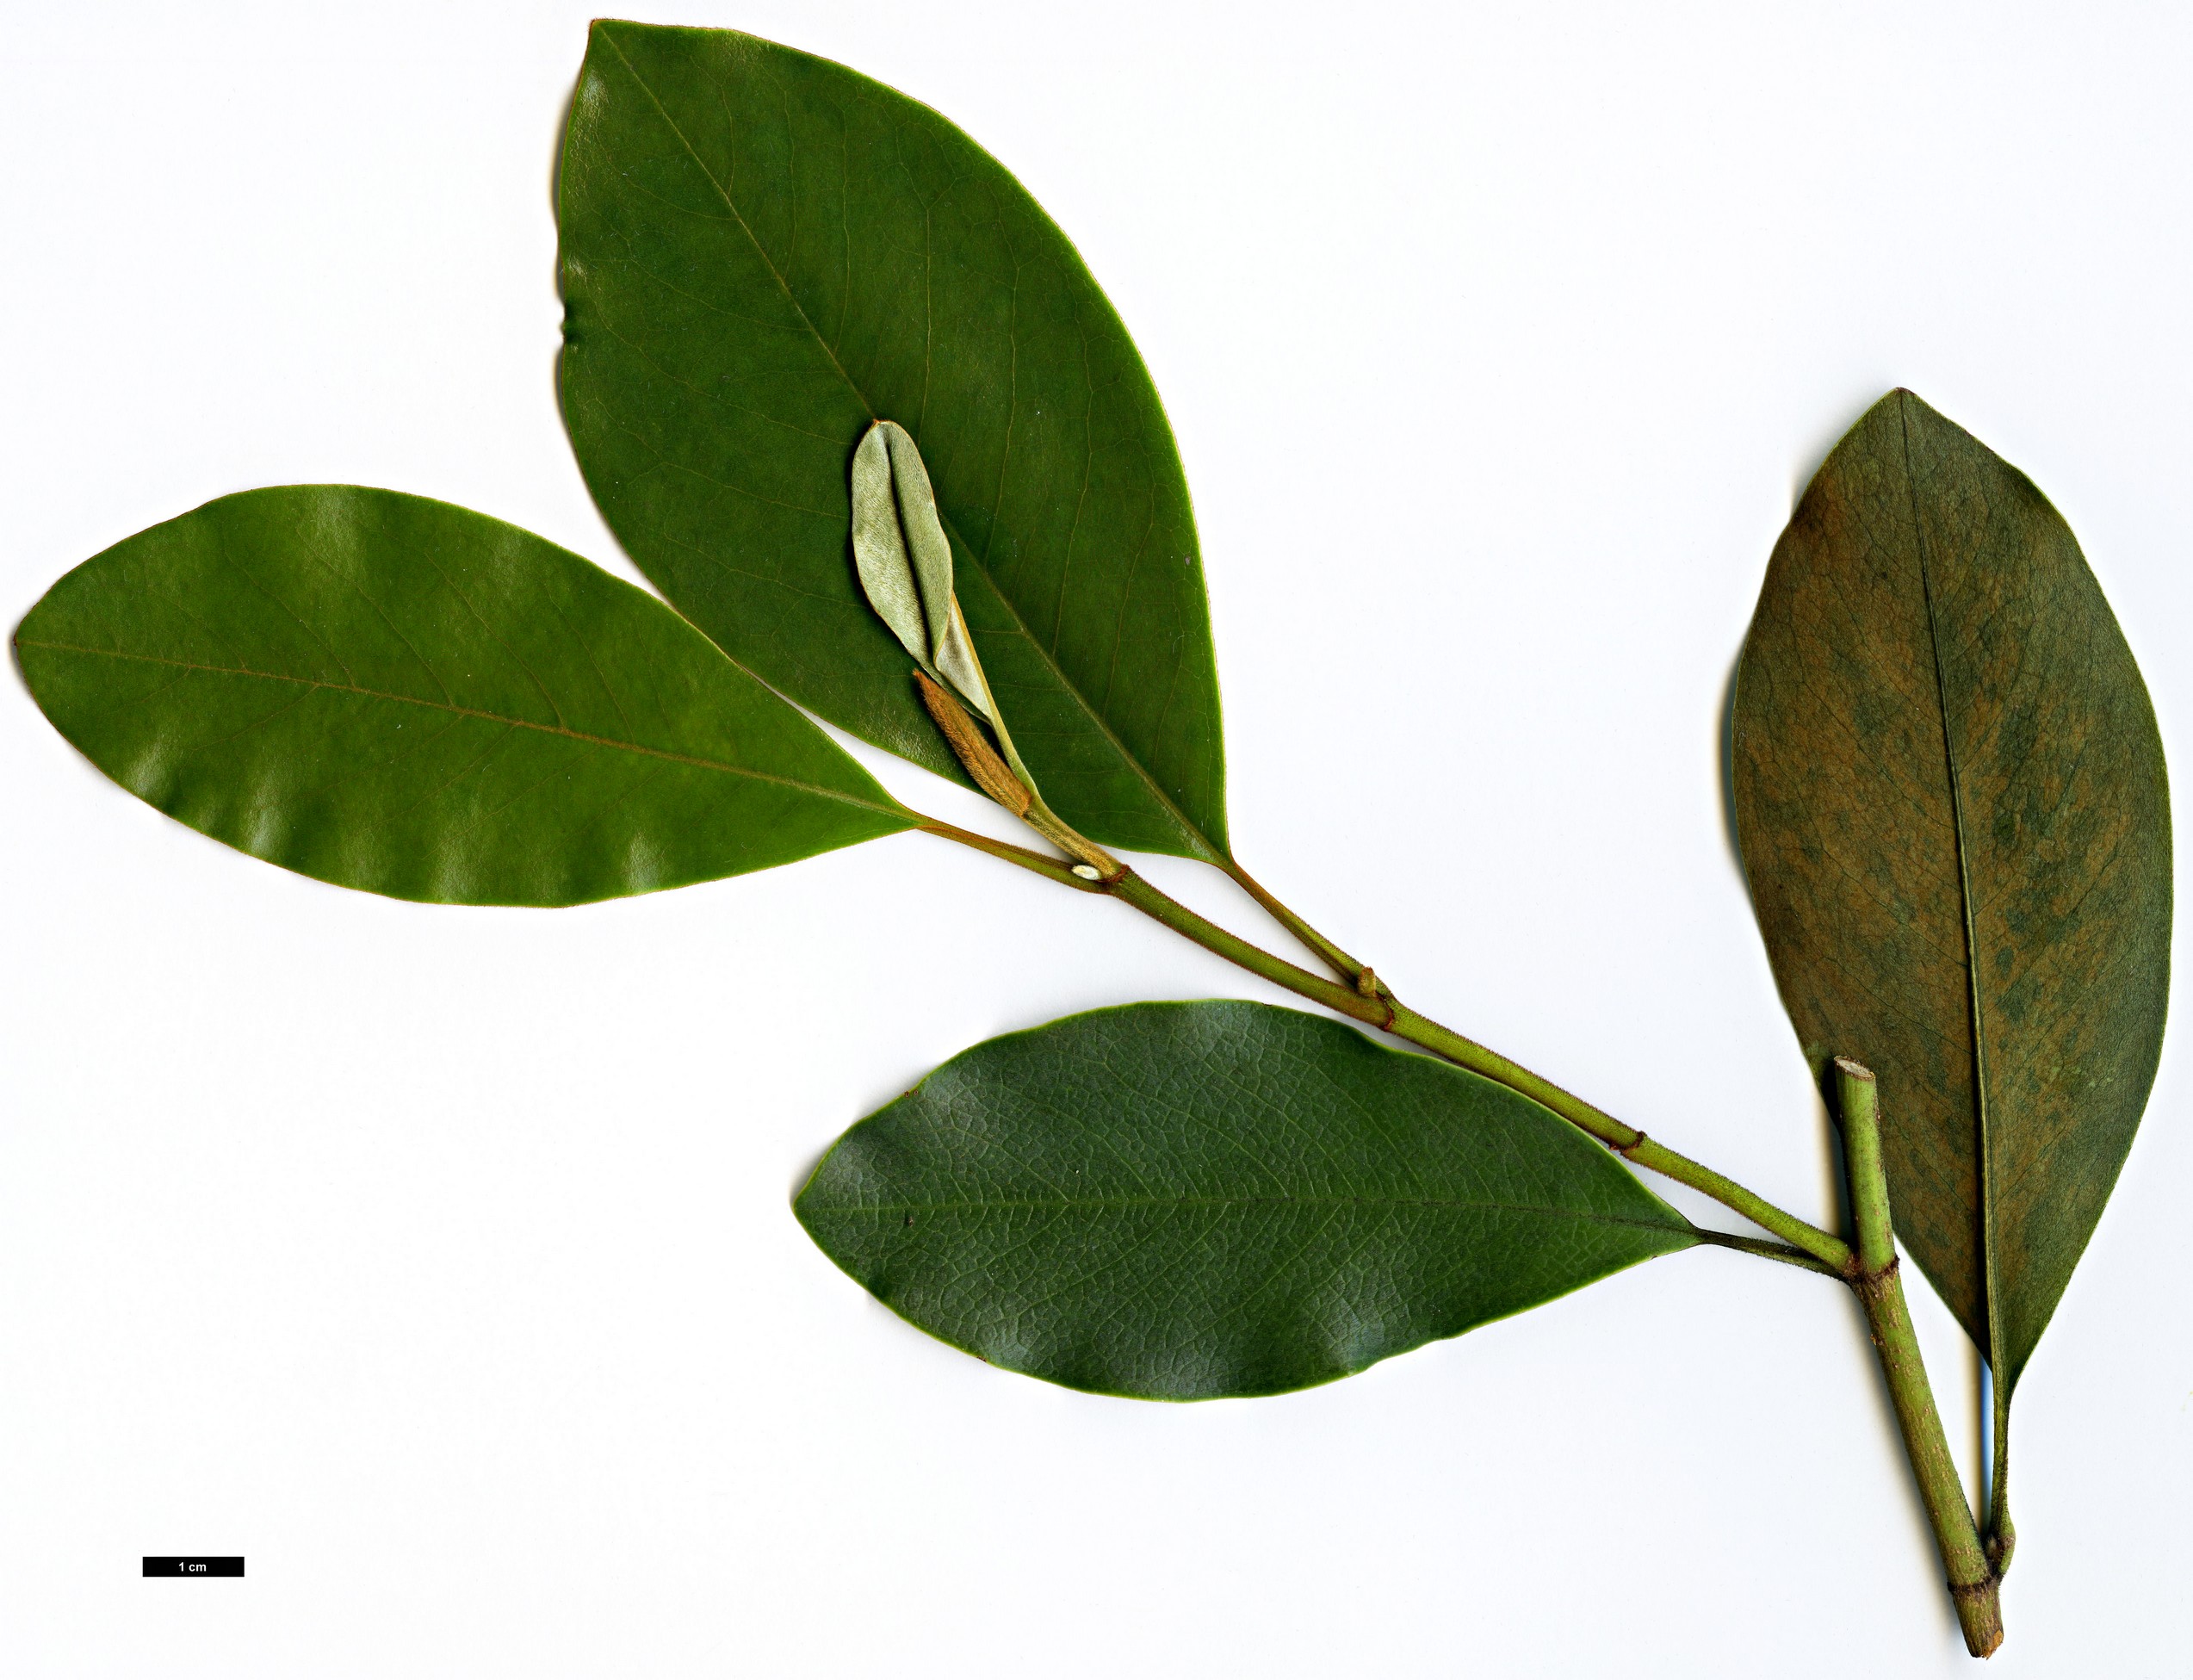 High resolution image: Family: Magnoliaceae - Genus: Magnolia - Taxon: macclurei - SpeciesSub: var. sublanea